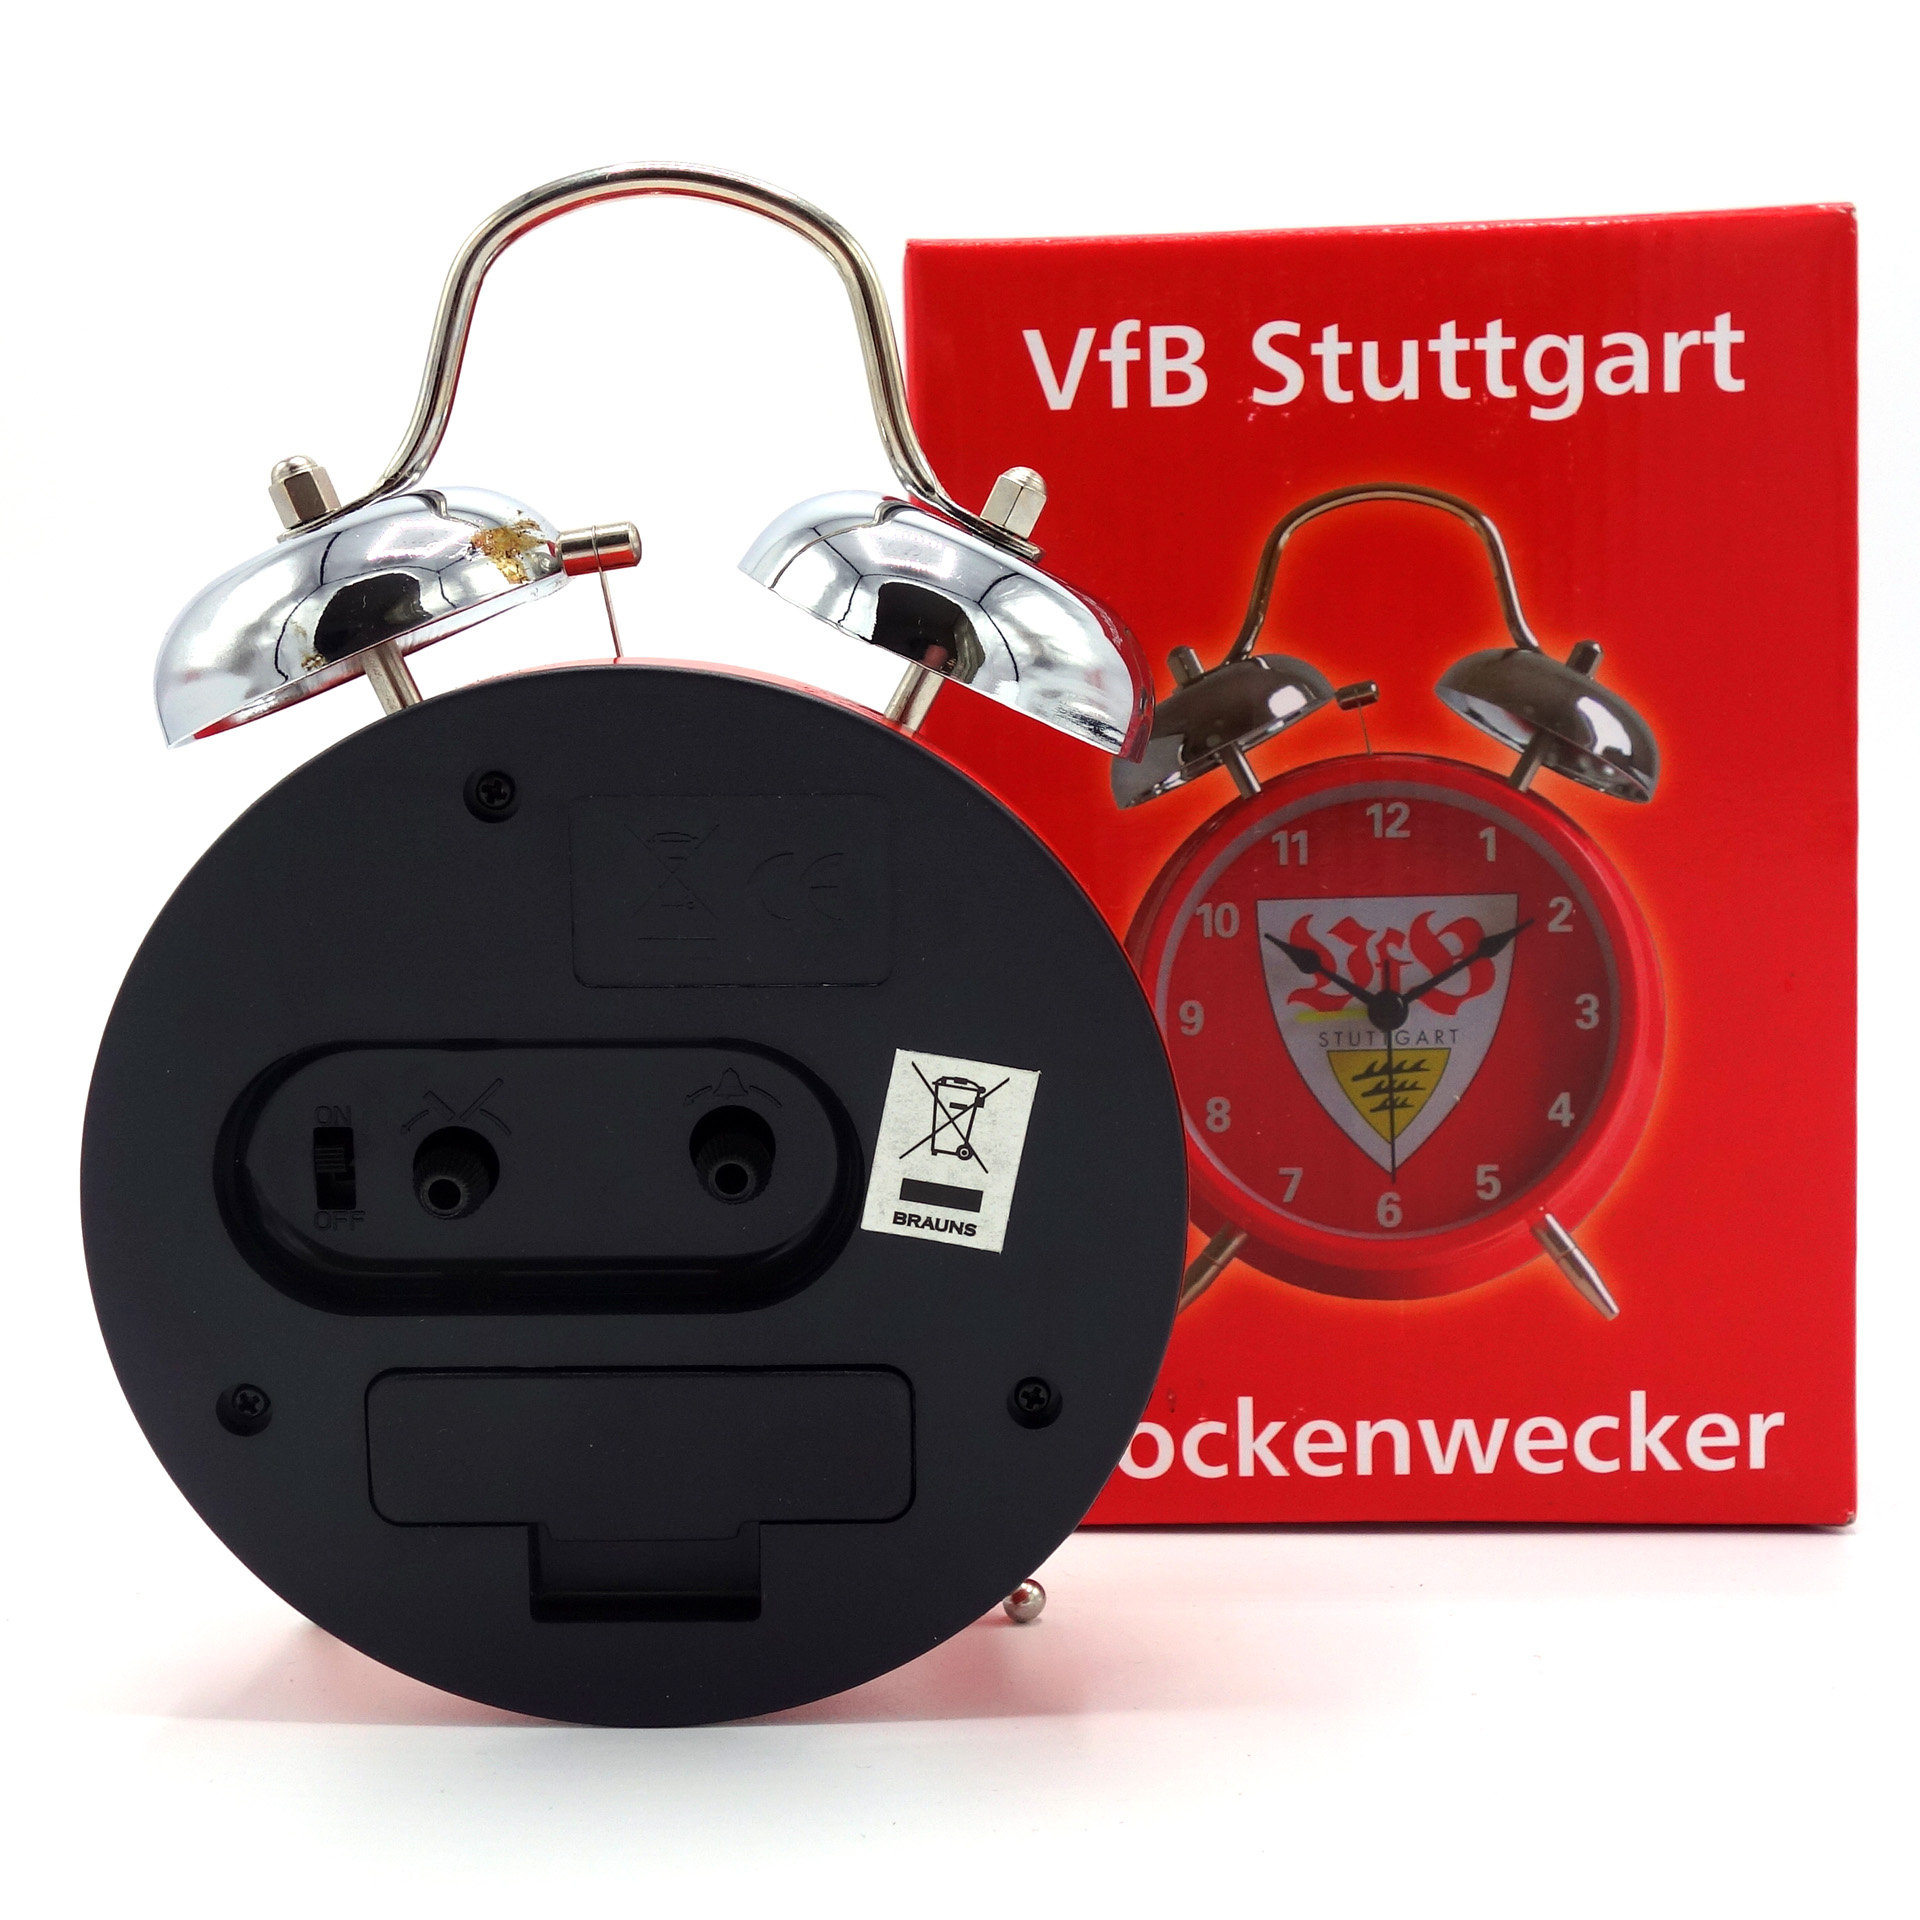 VfB Stuttgart Glockenwecker 